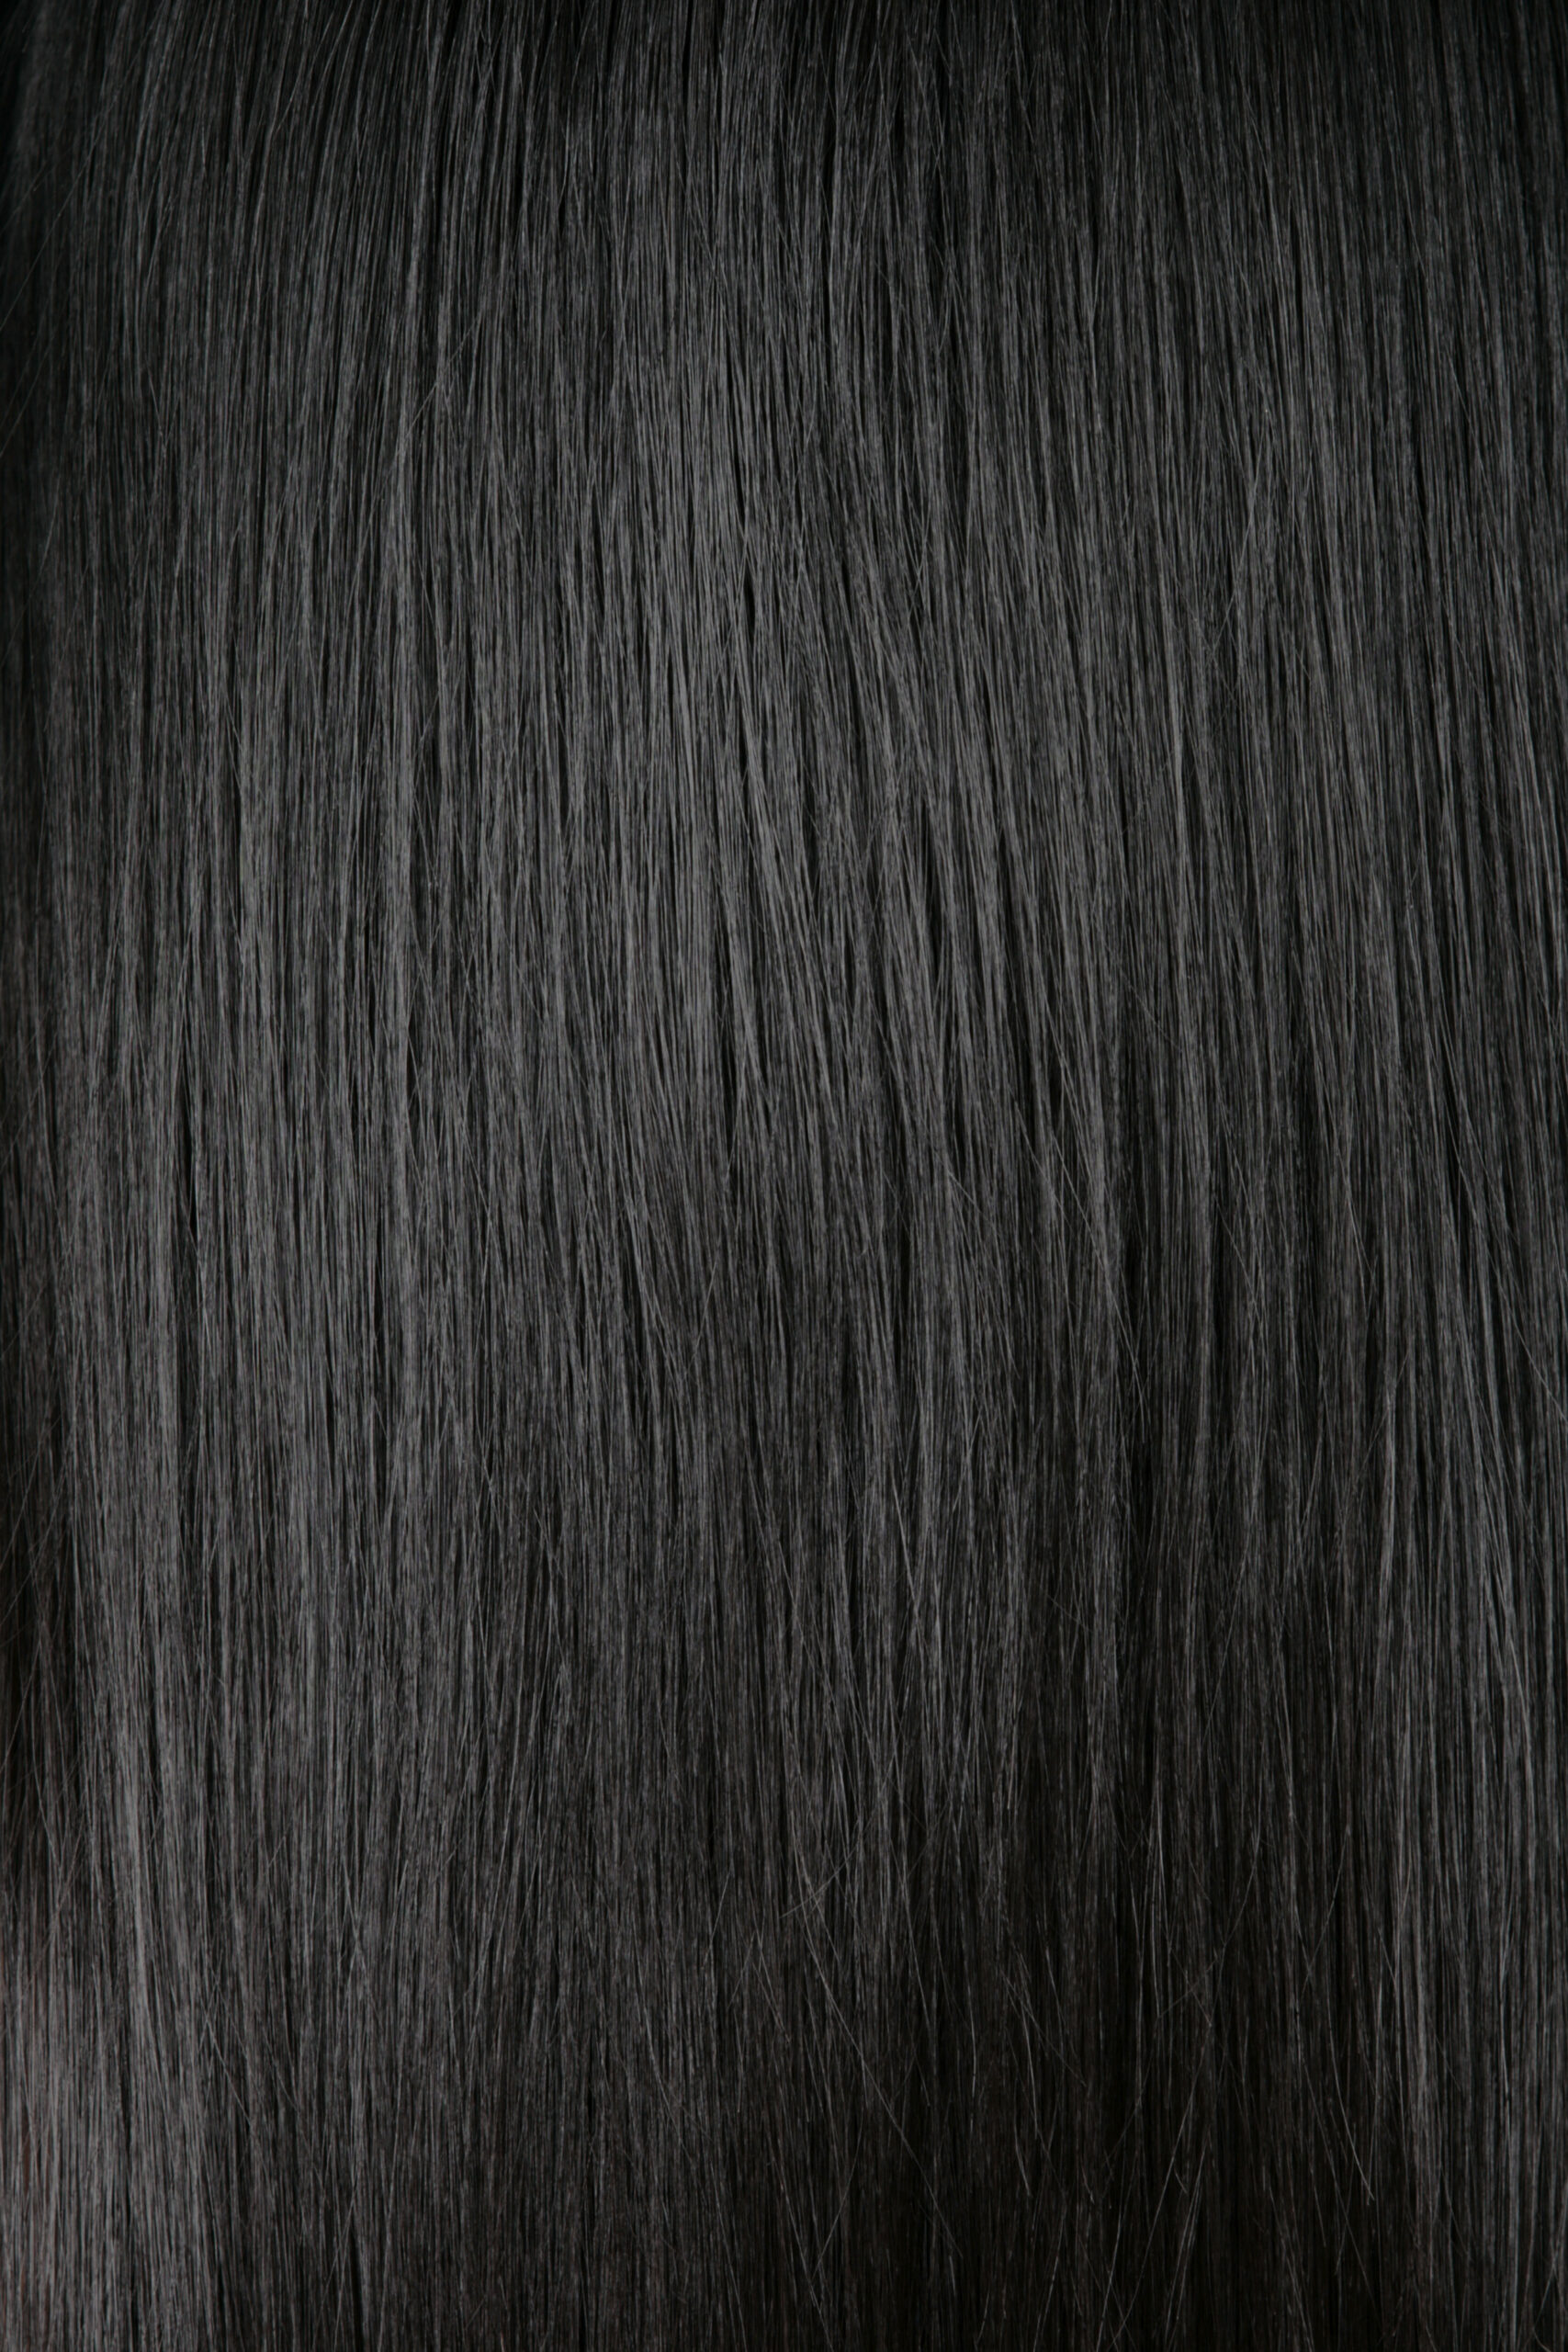 Черный волос на столе. Текстура волос. Черные волосы текстура. Темные волосы текстура. Чёрные фолосы текстура.